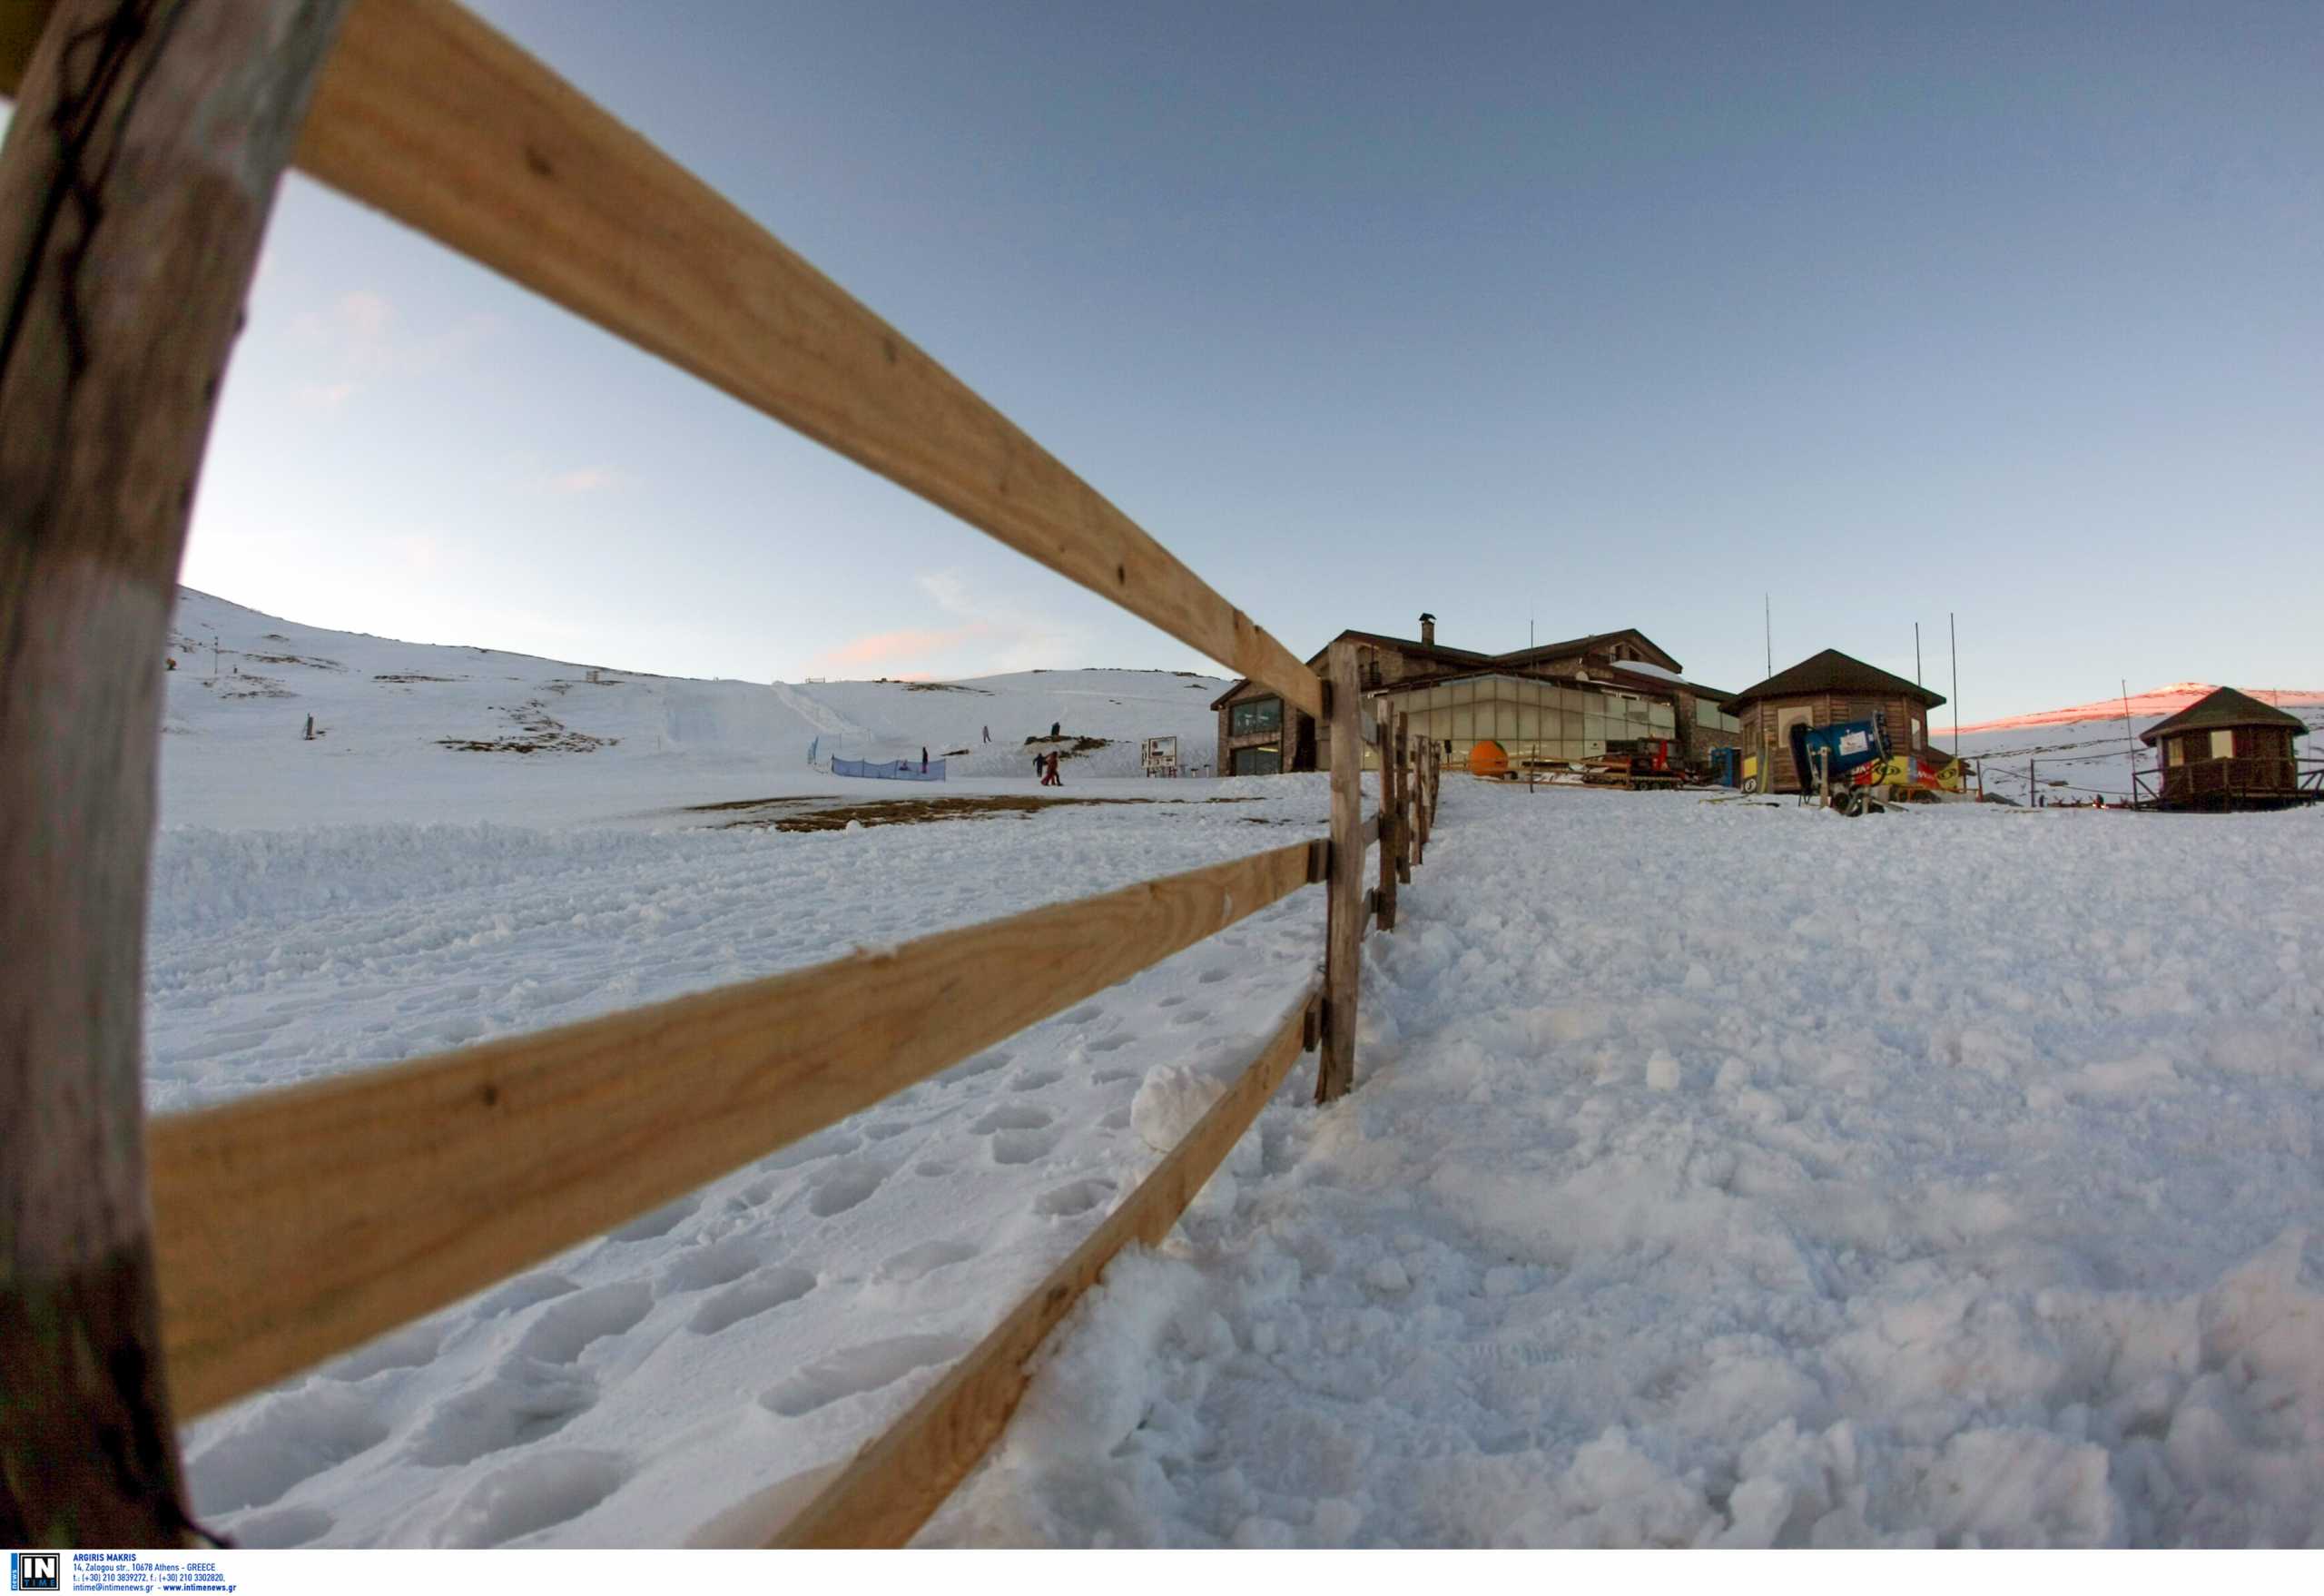 Τρία χωριά δίπλα σε χιονοδρομικά κέντρα για να απογειώσεις το ταξίδι σου